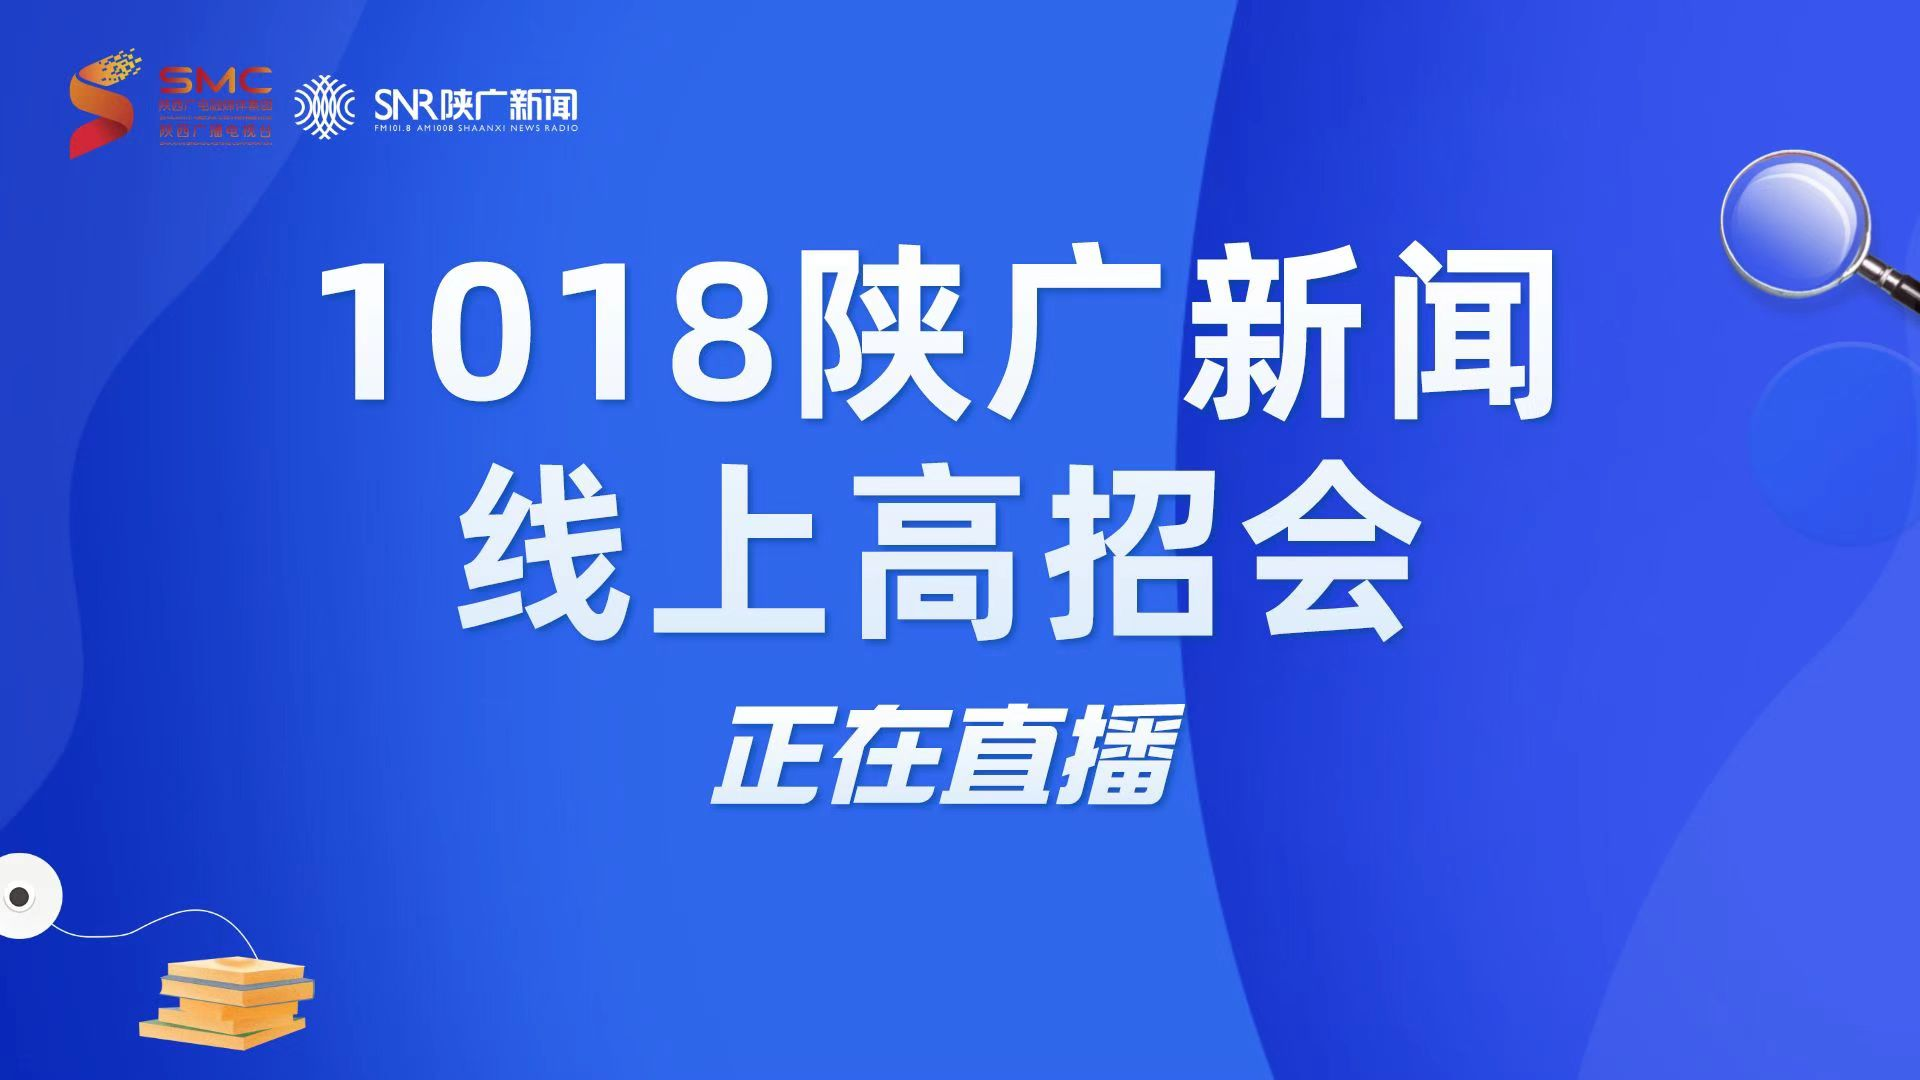 陜西廣電融媒體集團新聞中心都市廣播舉辦2022年“1018陜廣新聞線上高招會